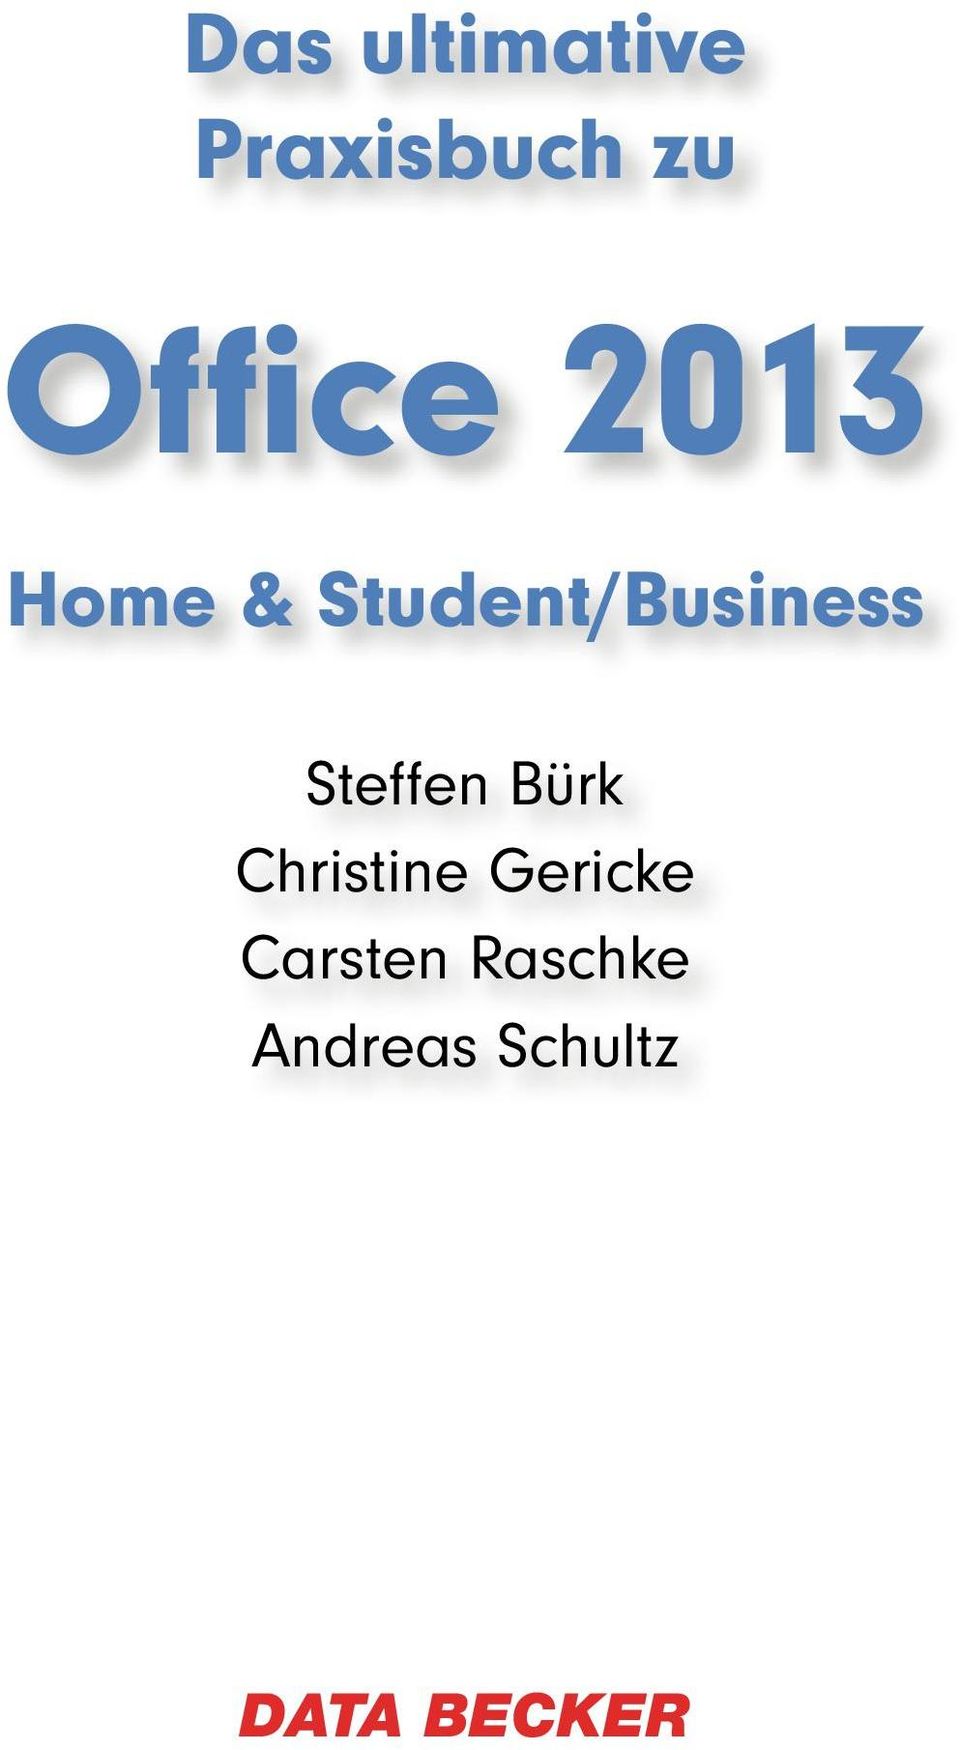 Student/Business Steffen Bürk